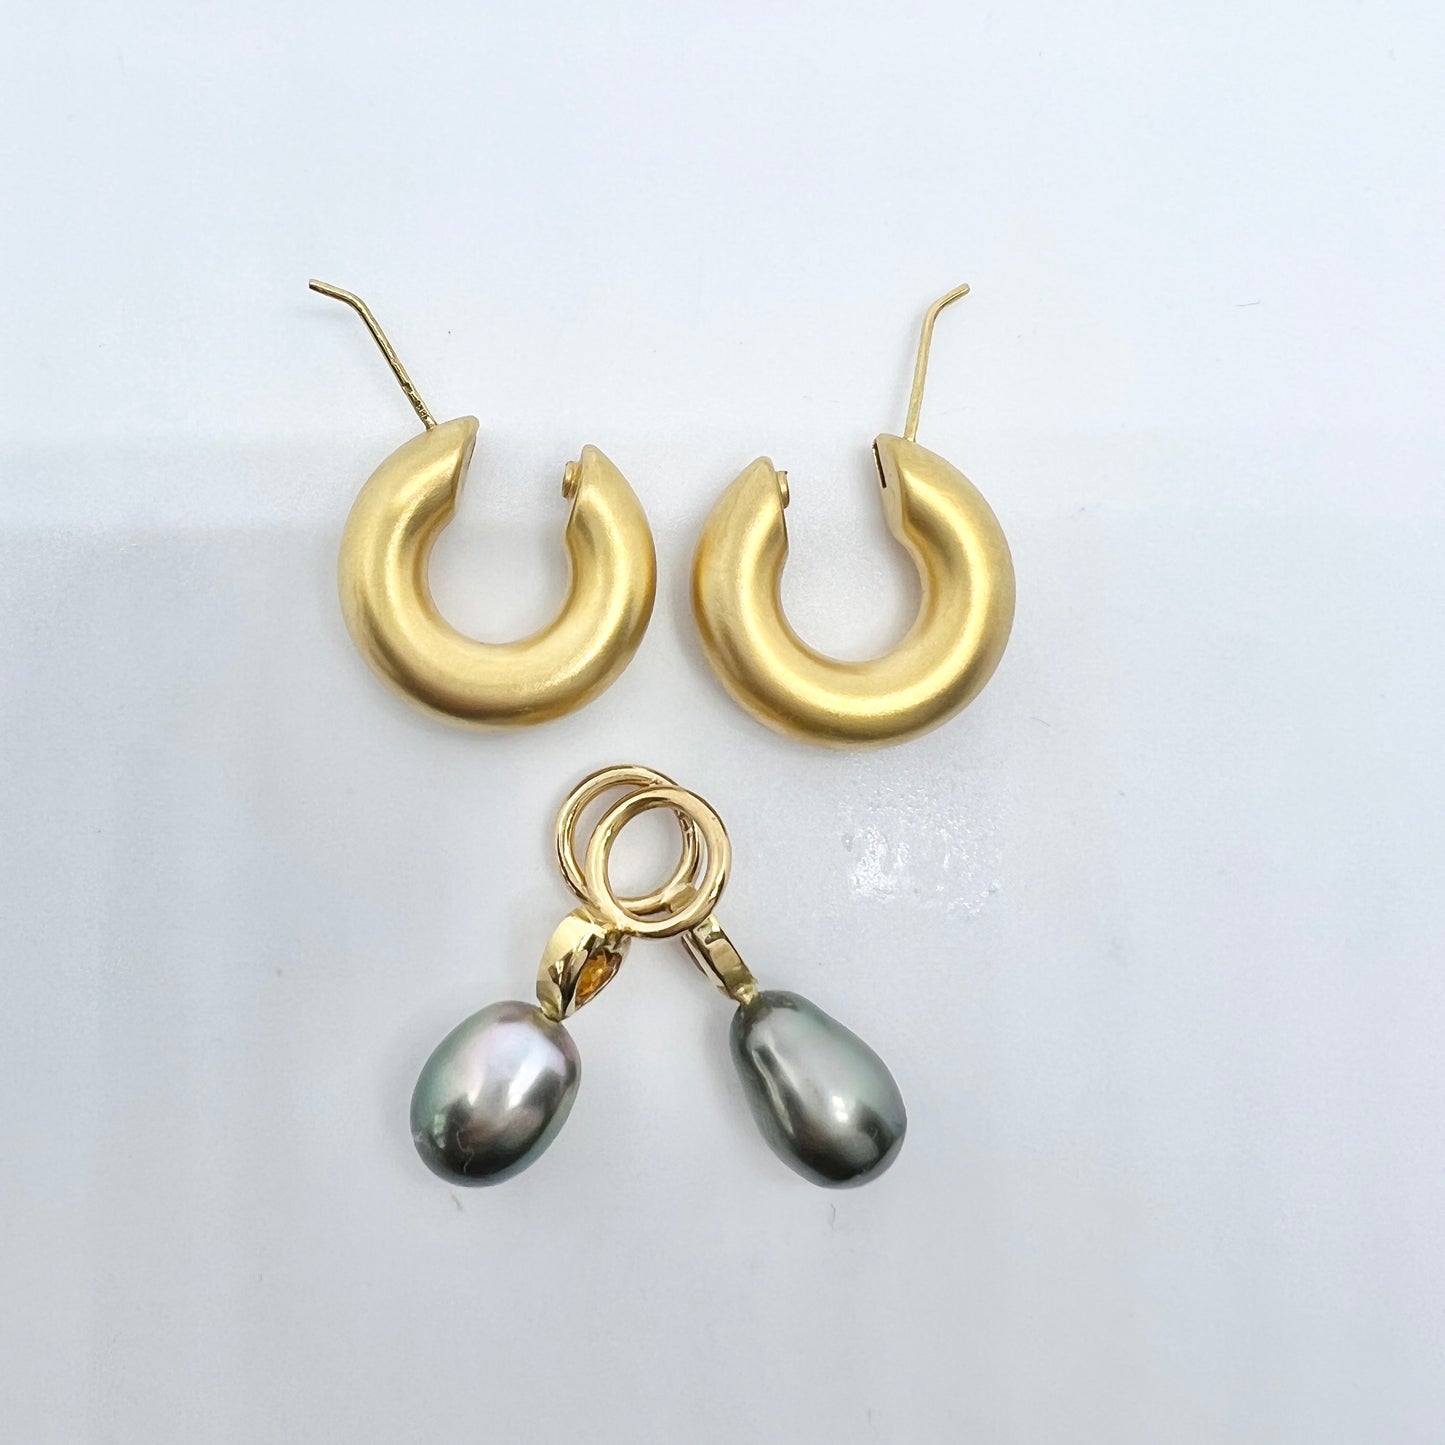 Vintage 18k Gold Citrine Heart Tahitian Pearl Earrings.